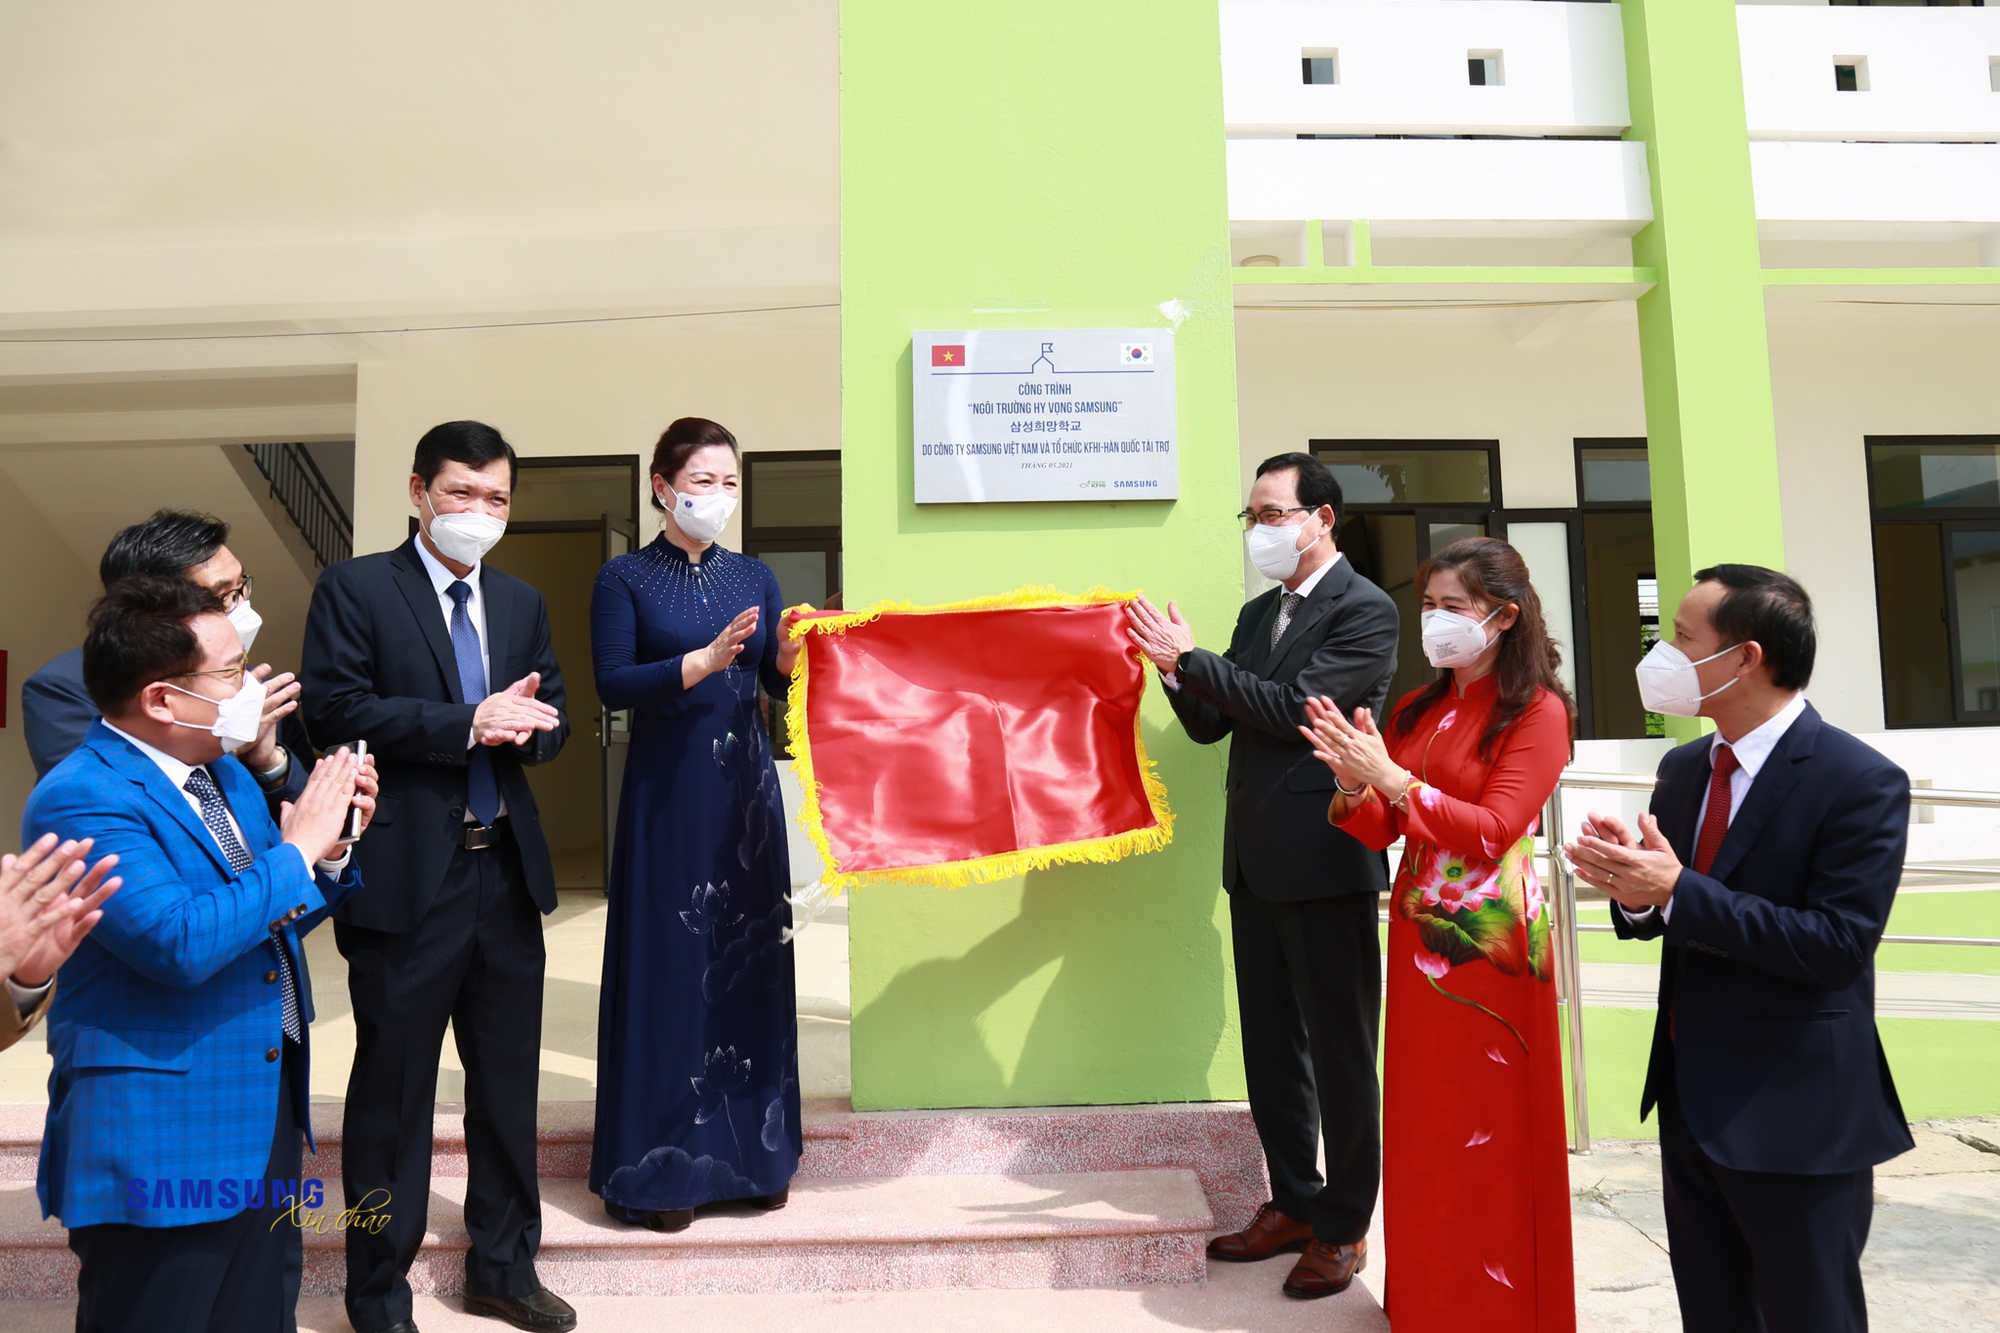 Trường học Hy vọng Samsung tại Việt Nam – Lan tỏa tri thức, kiến tạo tương lai - Ảnh 4.